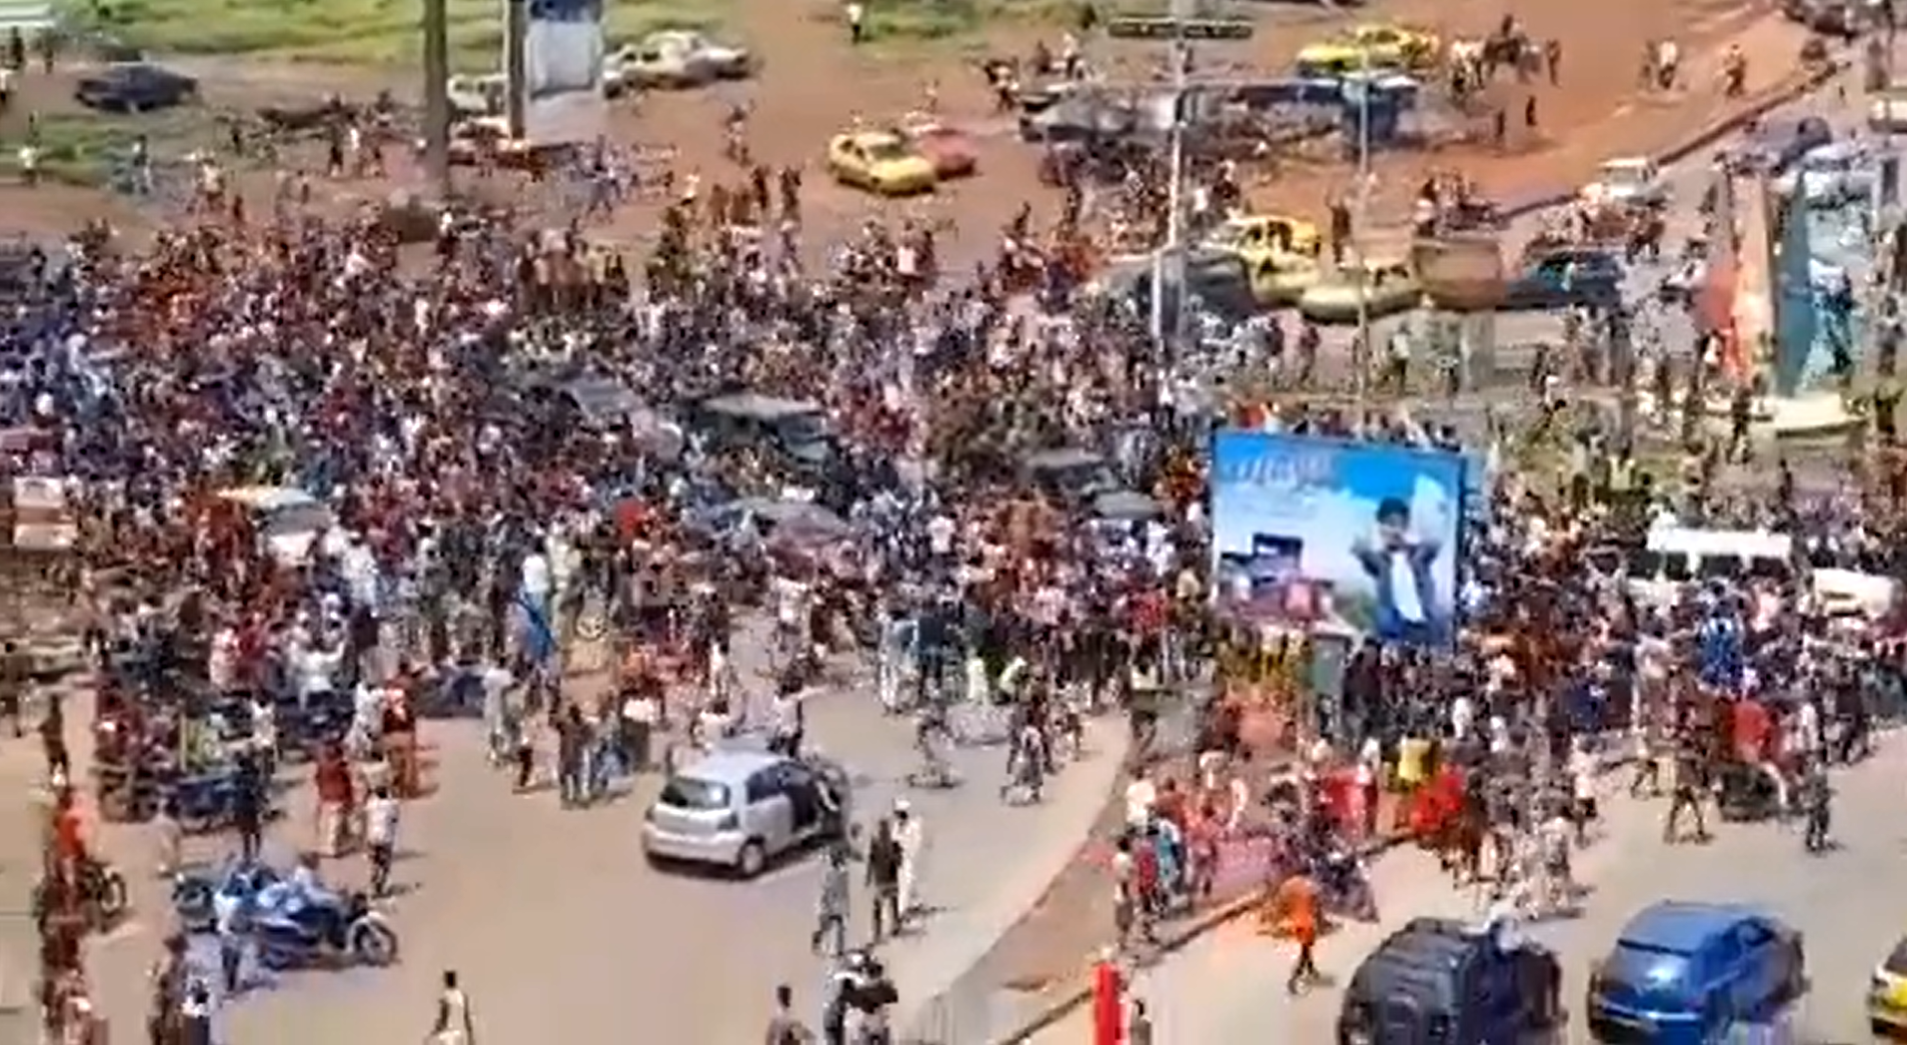 “¡Bravo, Bravo!”: Ciudadanos vitorean en las calles tras el golpe de estado contra el presidente de Guinea (VIDEO)